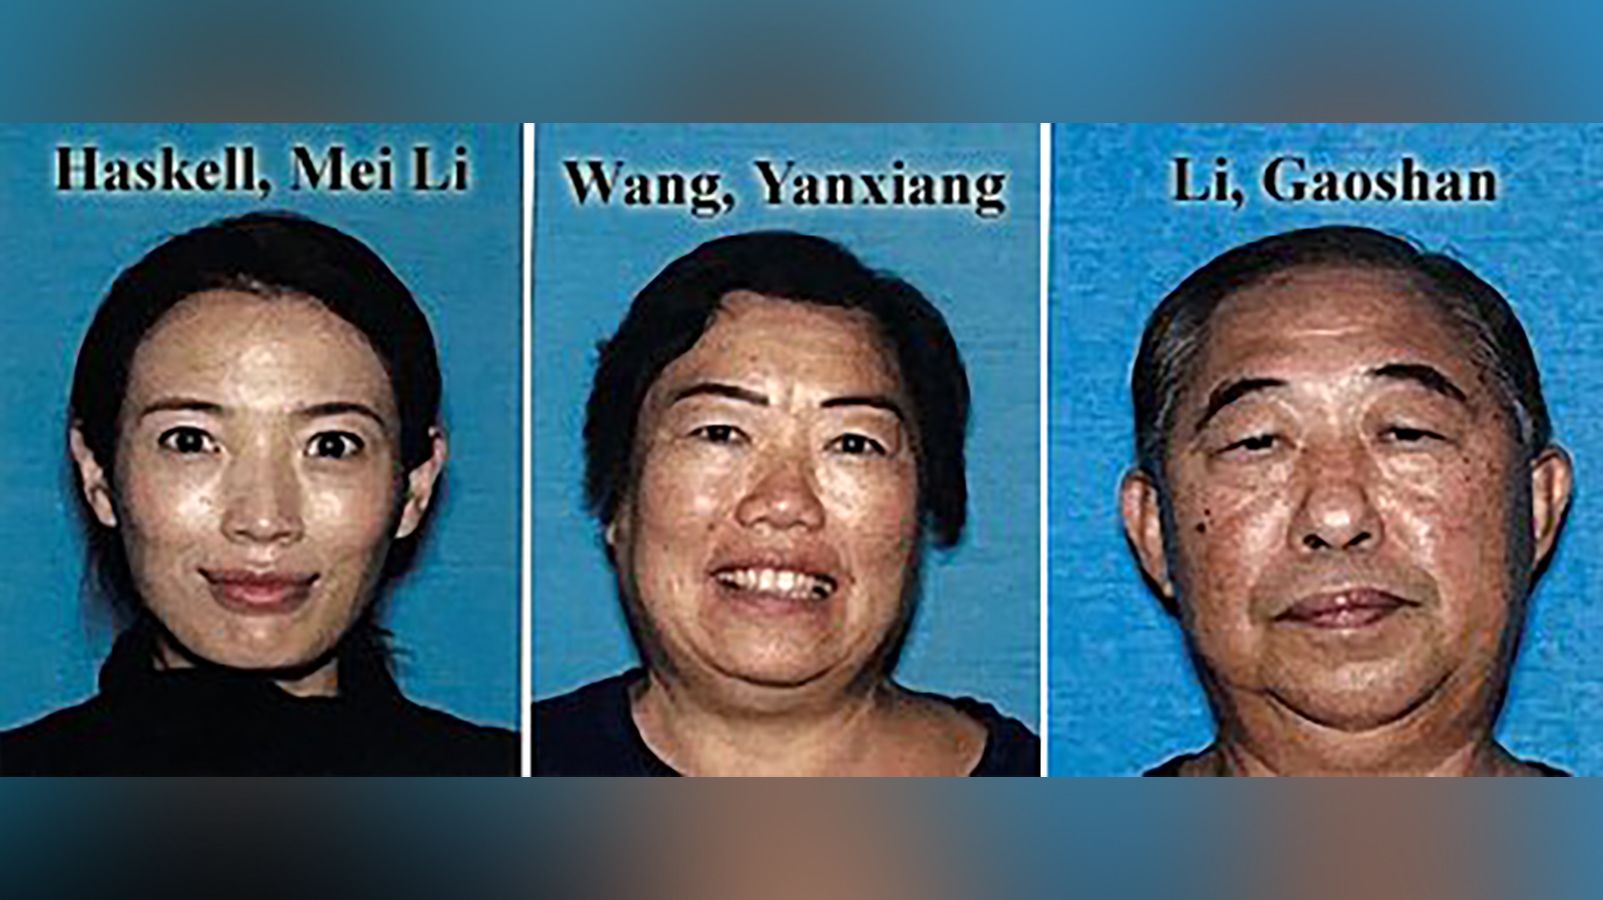 Police say Mei Li Haskell, 37, Yanxiang Wang, 64, and Gaoshan Li, 71, are unaccounted for. (Los Ang...